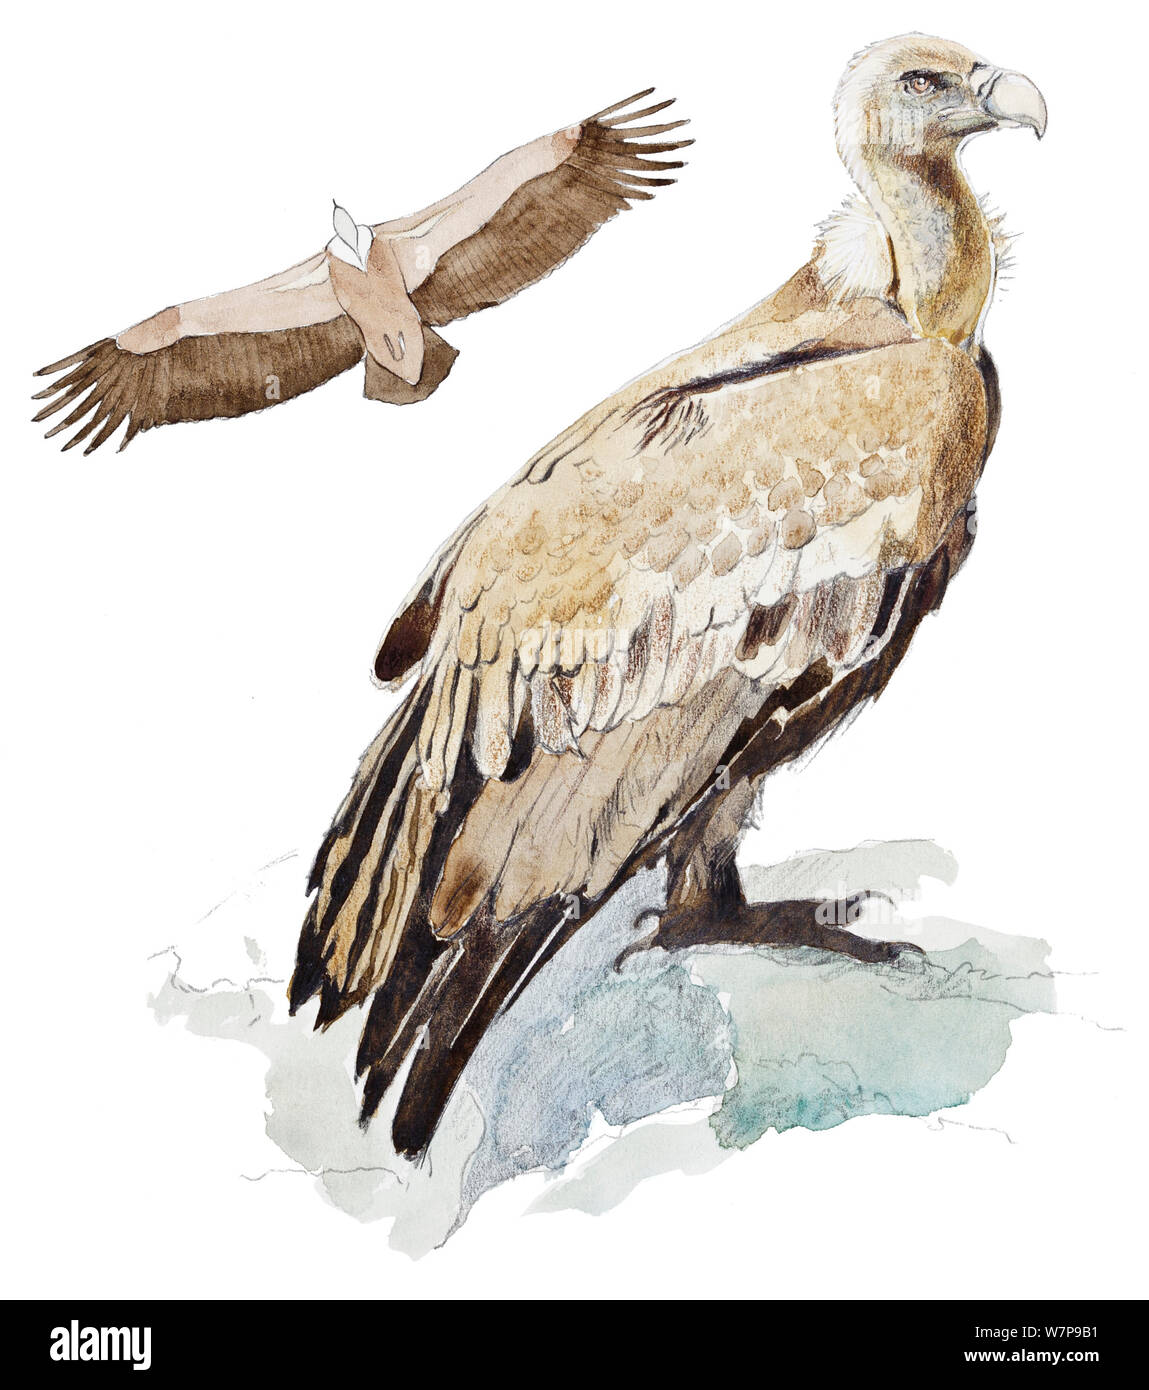 Illustration du vautour fauve (Gyps fulvus), portrait et voler. Crayon et aquarelle. Banque D'Images